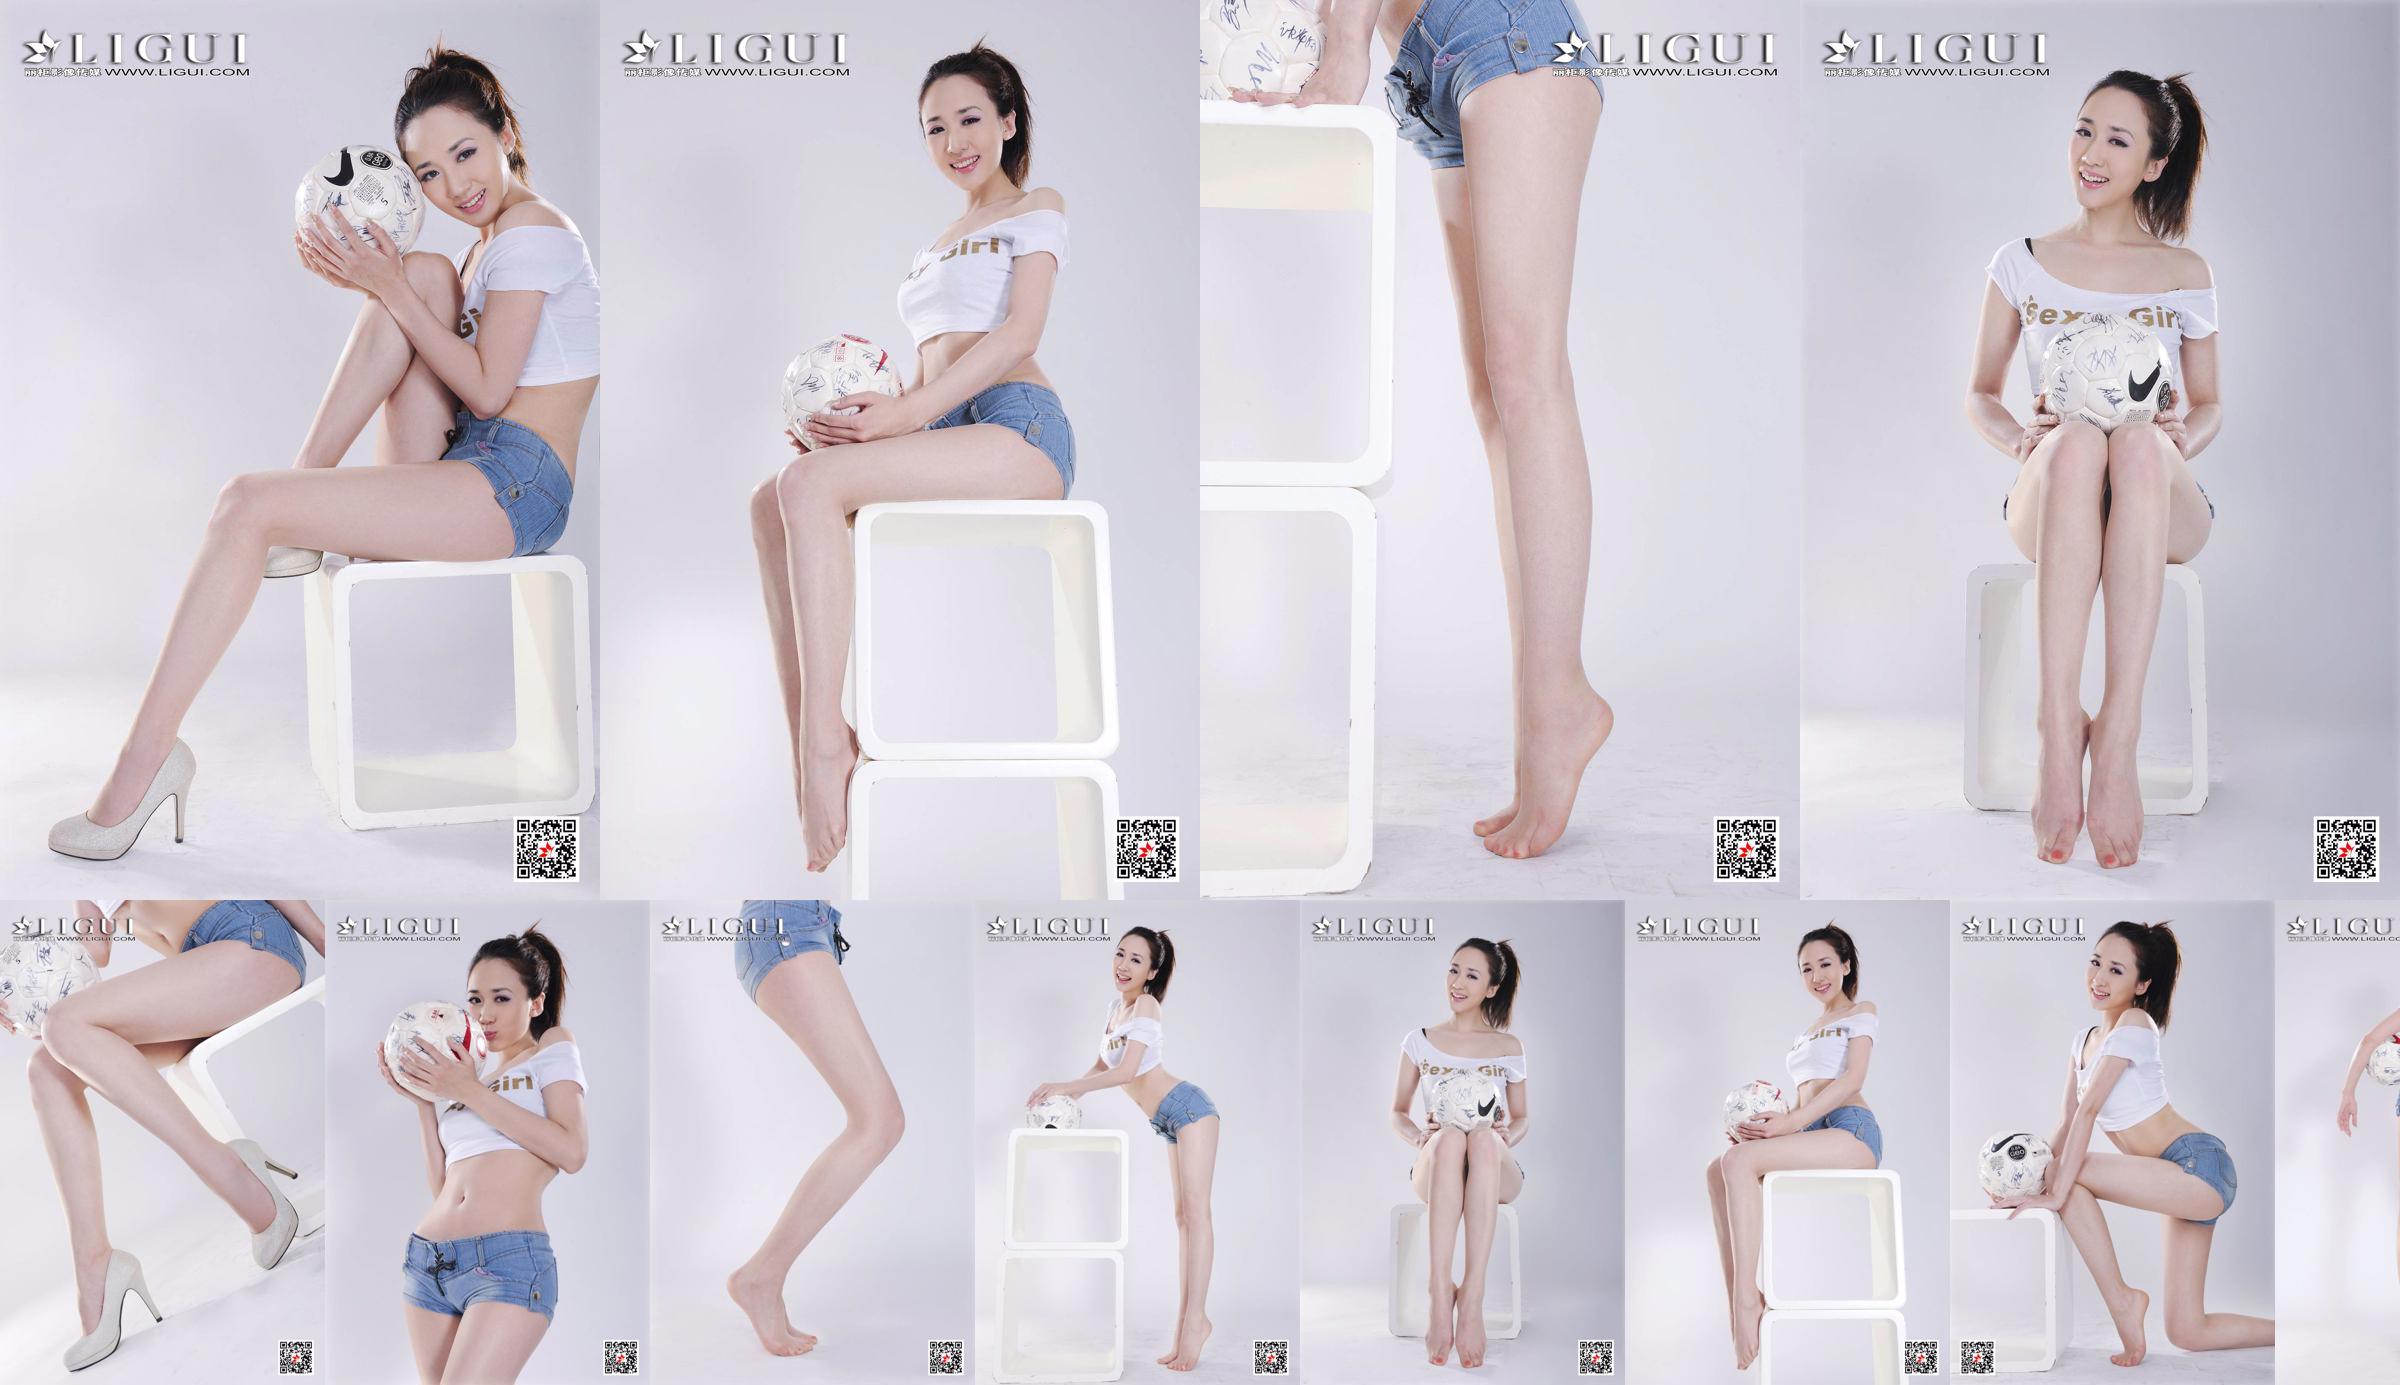 Model Qiu Chen "Gadis Sepak Bola Celana Super Pendek" [LIGUI] No.4c4e4a Halaman 1